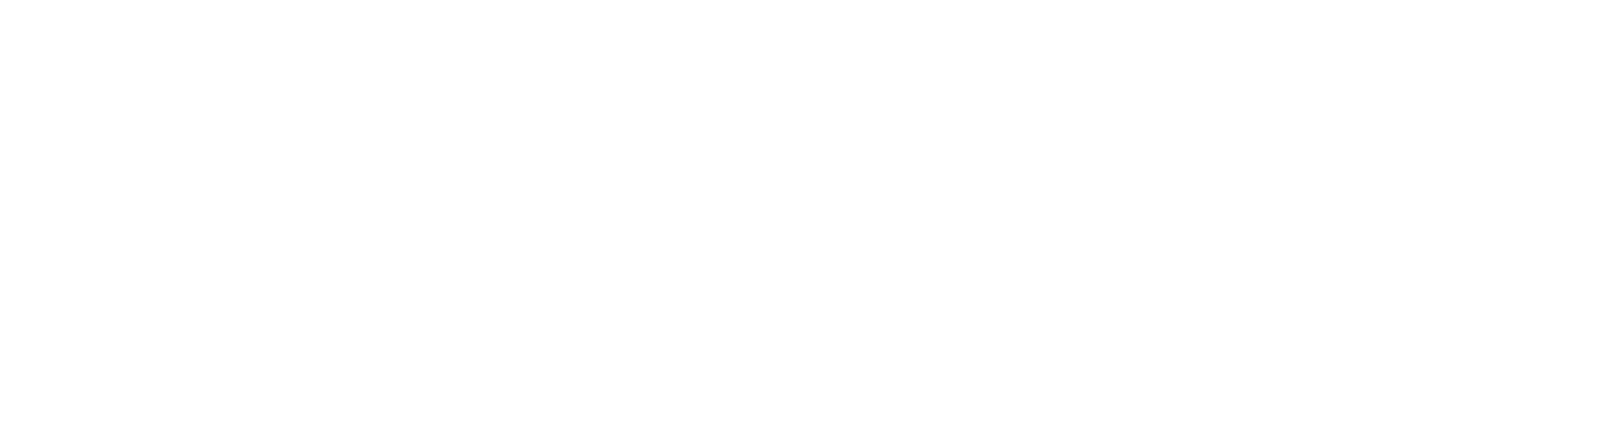 Mayday “Just Rock It 2015 TOKYO” at Nippon Budokan